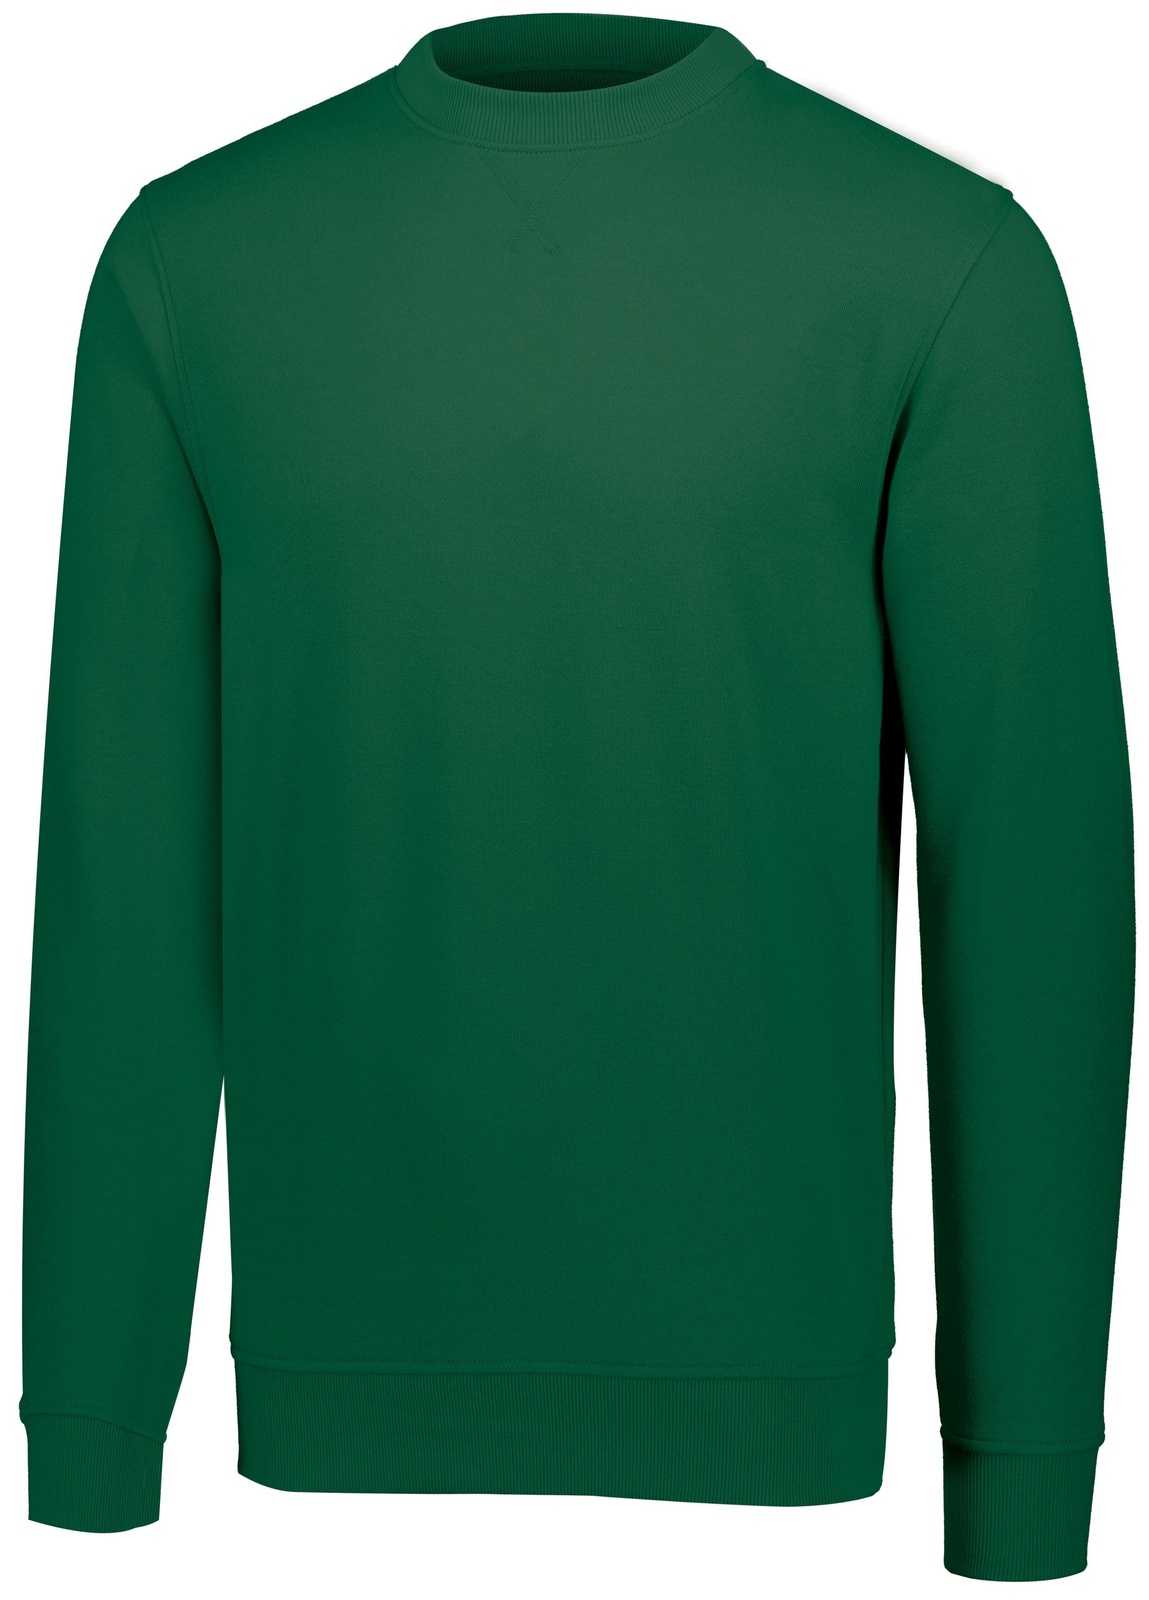 Augusta 5416 60/40 Fleece Crewneck Sweatshirt - Dark Green - HIT a Double